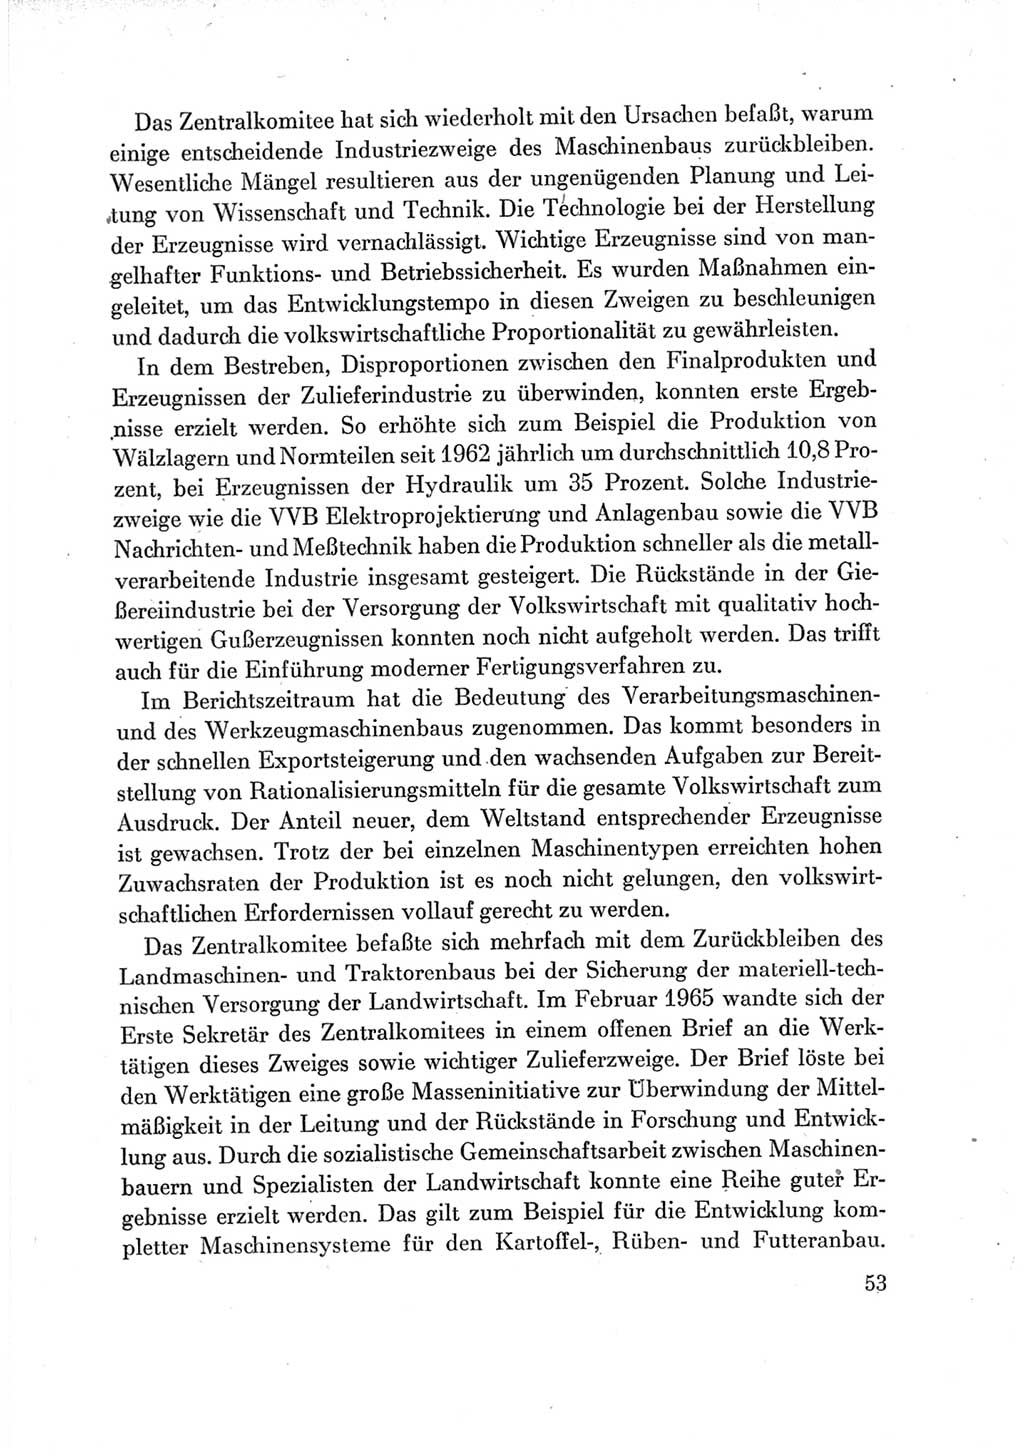 Protokoll der Verhandlungen des Ⅶ. Parteitages der Sozialistischen Einheitspartei Deutschlands (SED) [Deutsche Demokratische Republik (DDR)] 1967, Band Ⅳ, Seite 53 (Prot. Verh. Ⅶ. PT SED DDR 1967, Bd. Ⅳ, S. 53)